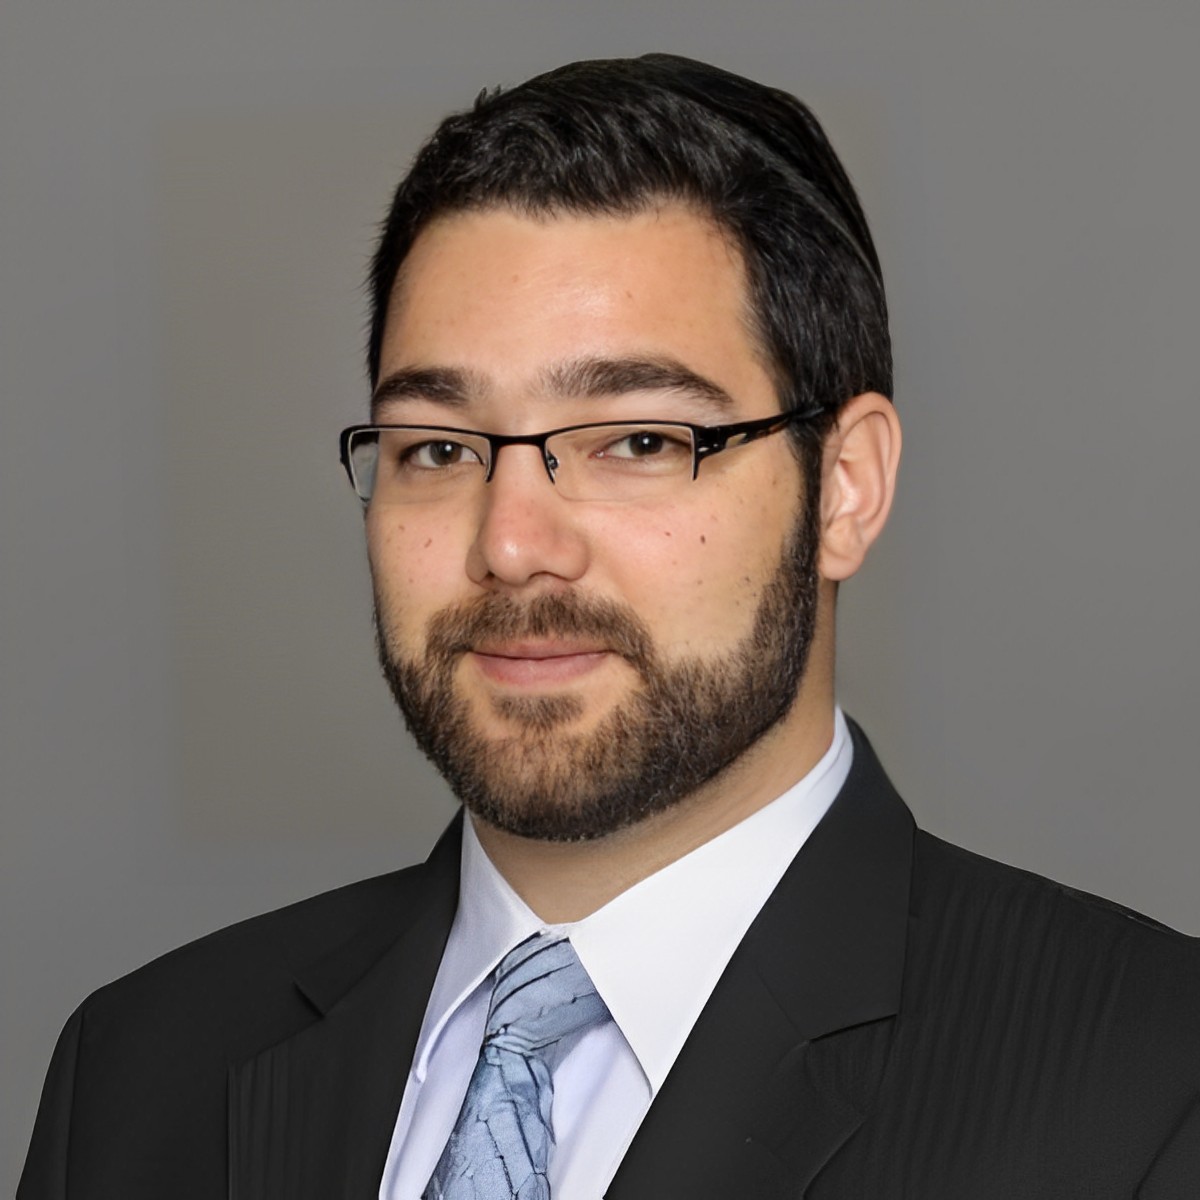 Benhyaoun Law Firm, Abraham Benhayoun, Managing Partner, Tax and Estate Planning, Miami, Florida